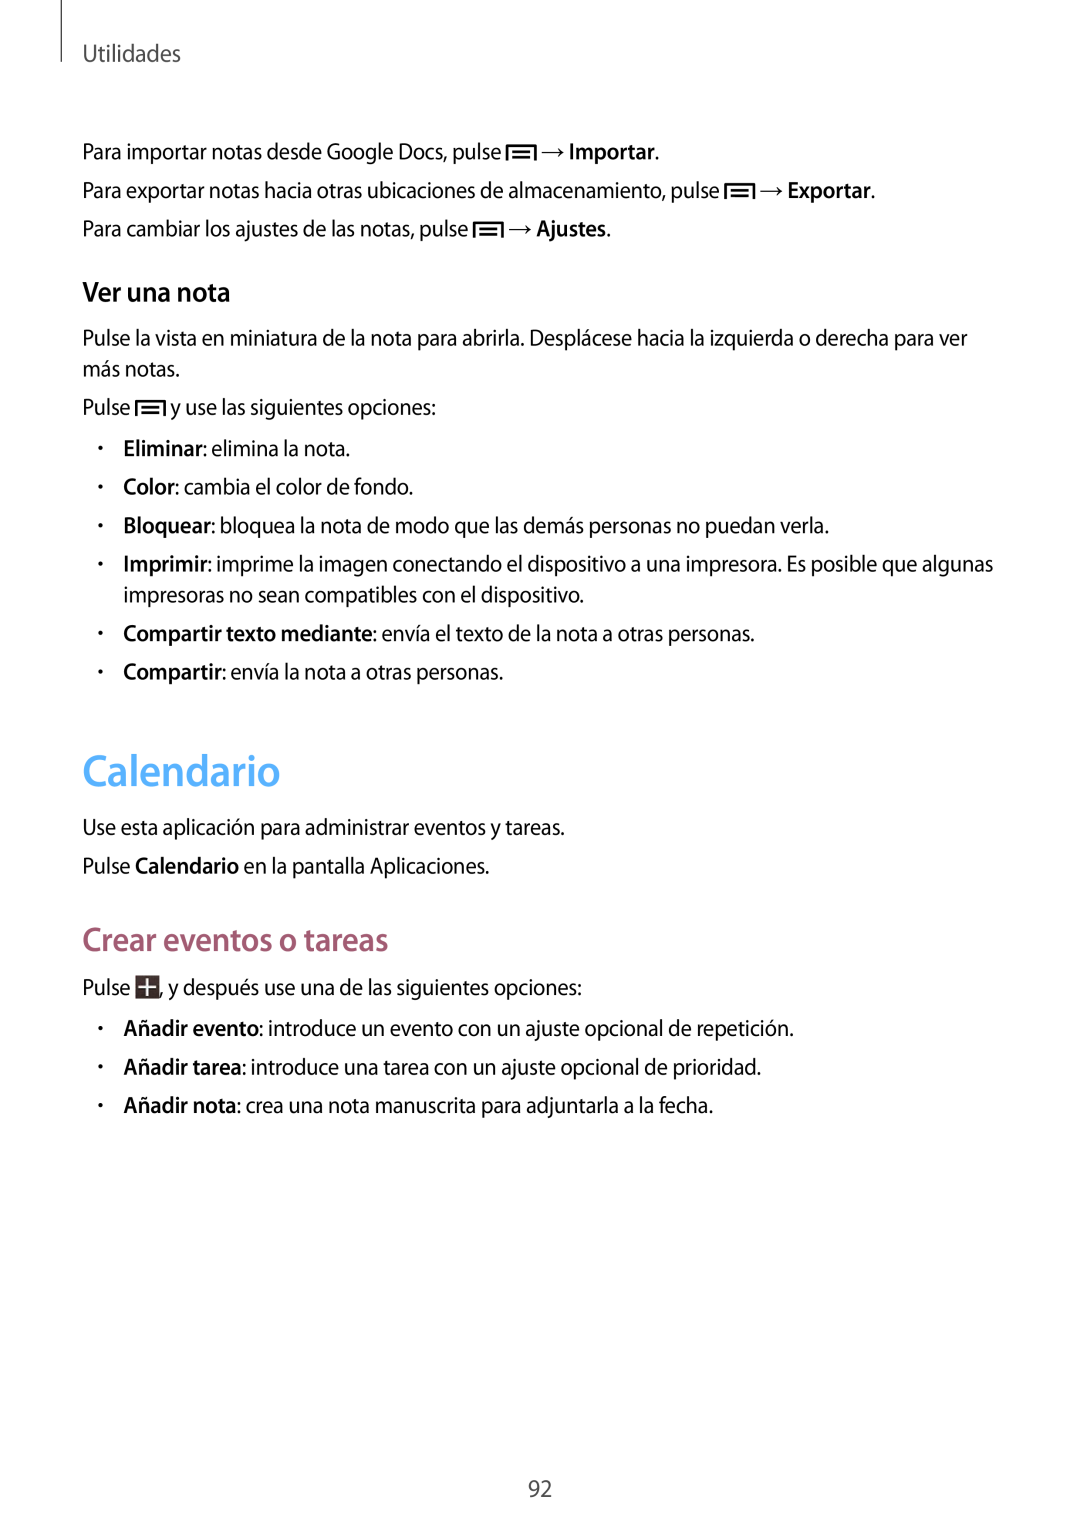 Samsung SM-T3150ZWAATL manual Calendario, Crear eventos o tareas, Ver una nota, Utilidades 